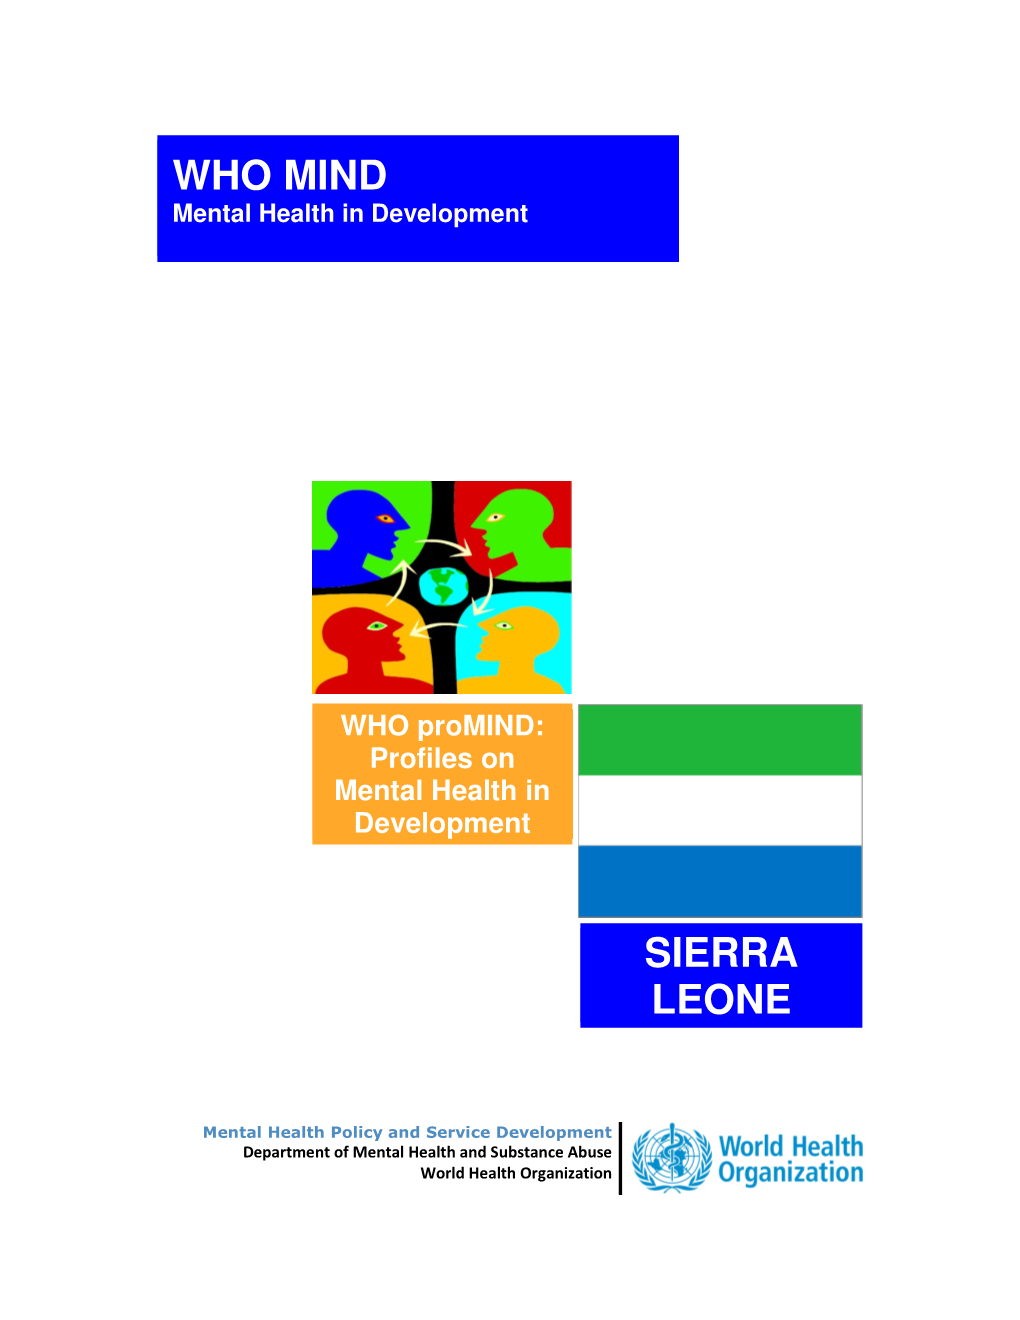 Profiles on Mental Health in Development: Sierra Leone, 2012